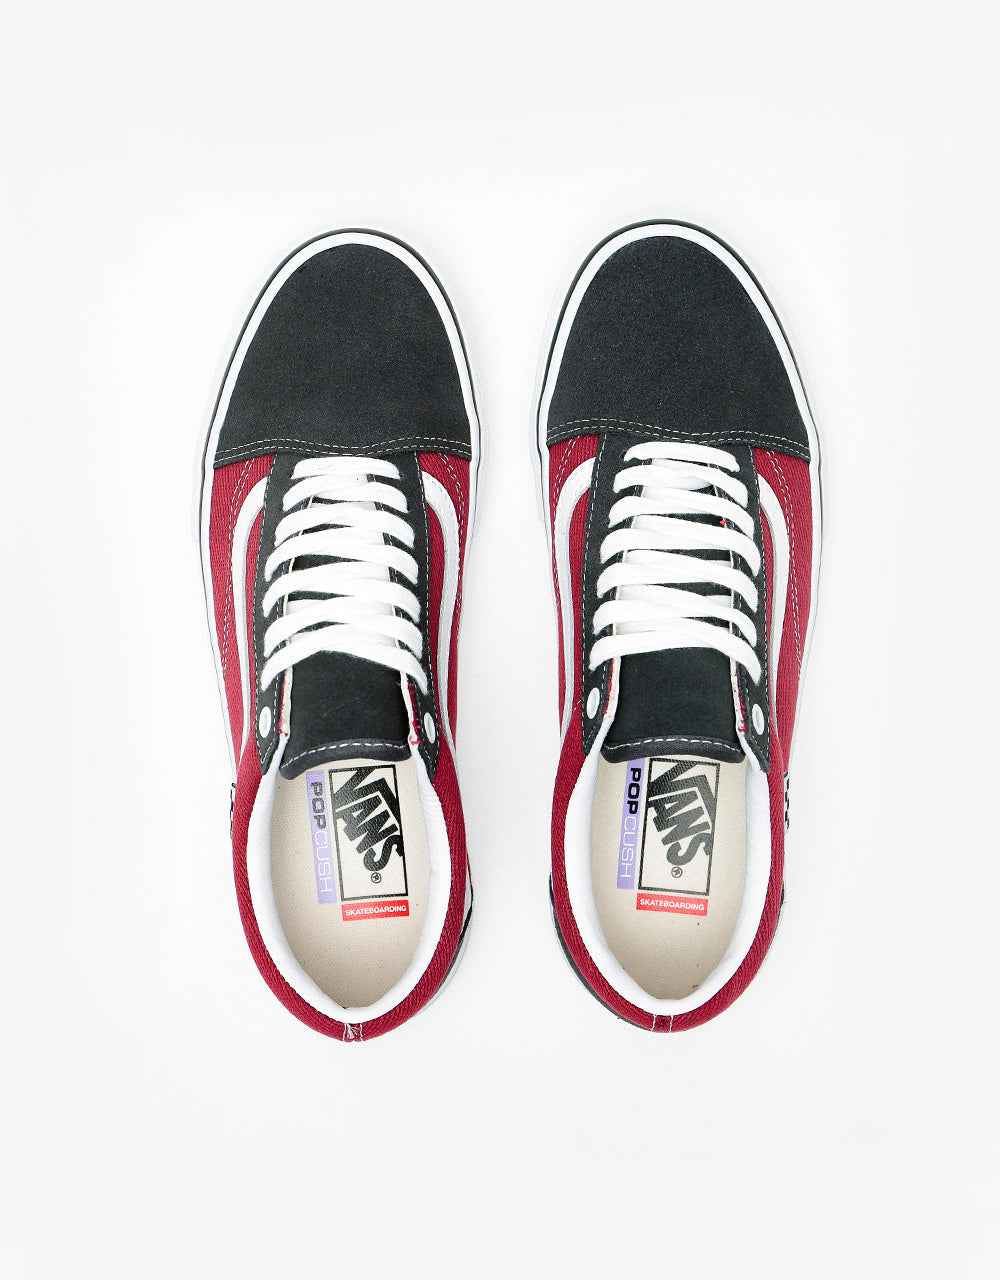 Vans Skate Old Skool Shoes - Asphalt/Pomegranate